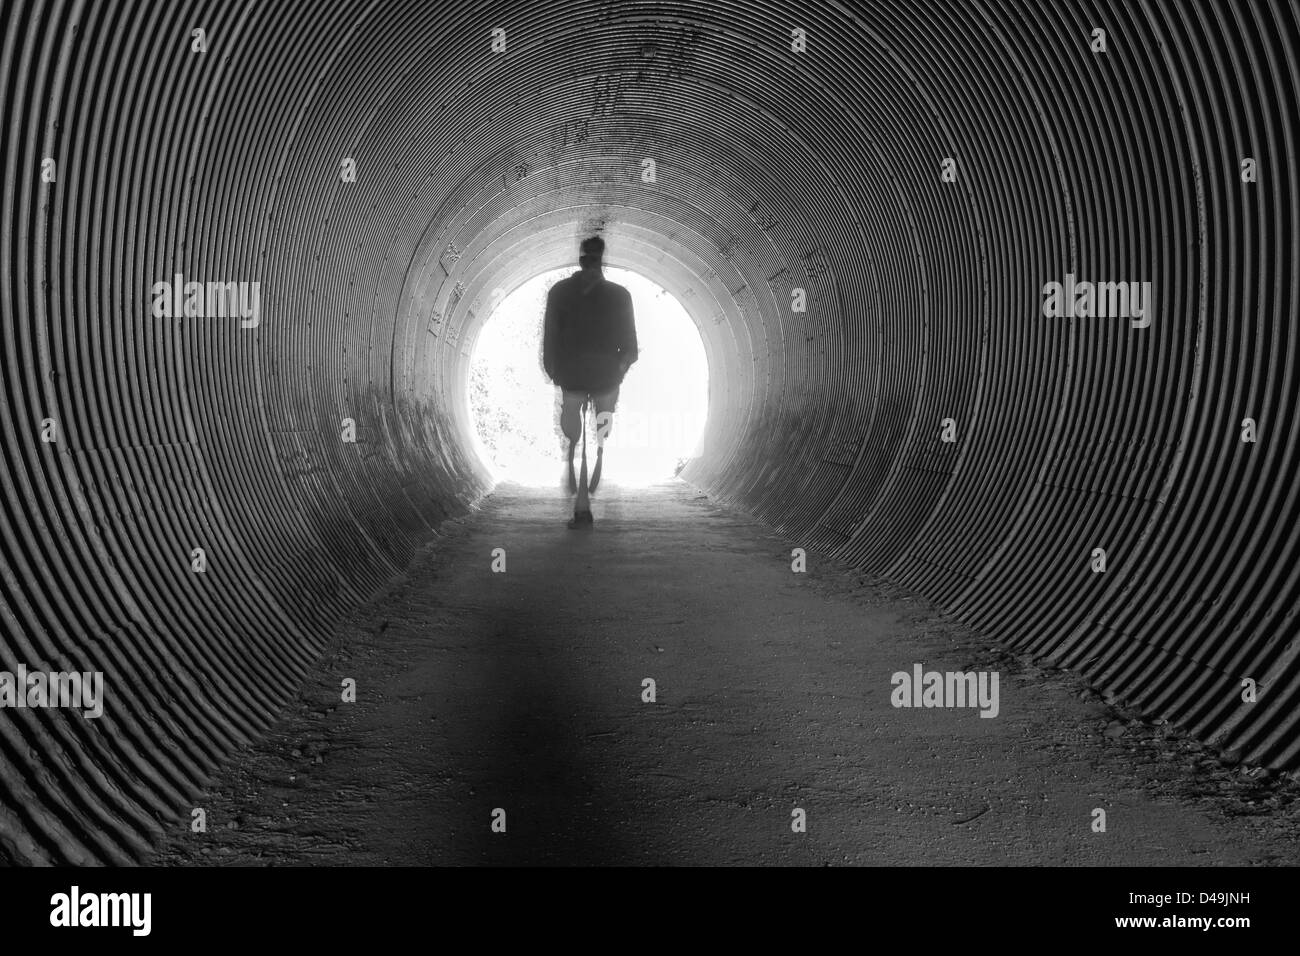 Un singolo uomo cammina attraverso un lungo tunnel nella luce dell'ignoto. Foto Stock